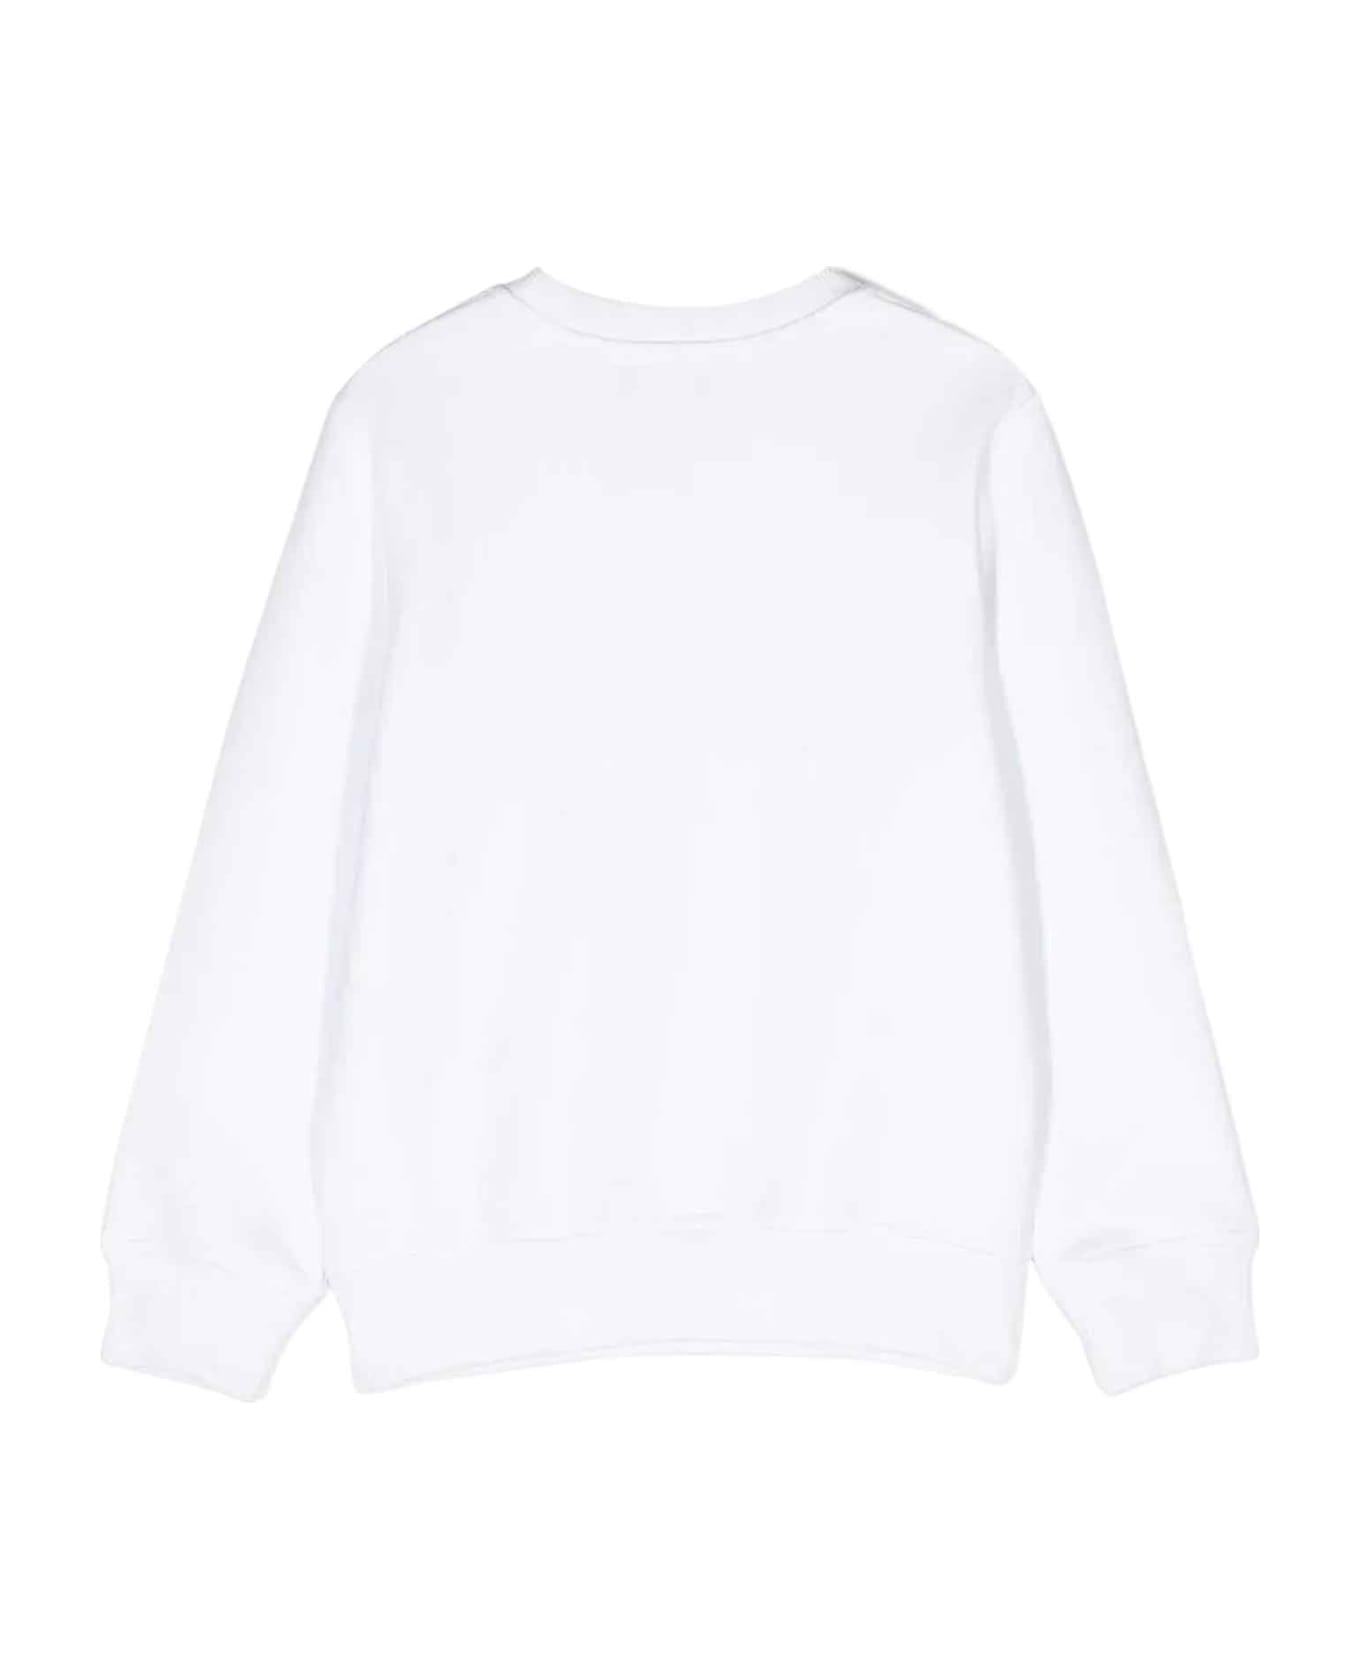 Moschino White Sweatshirt Unisex - Bianco